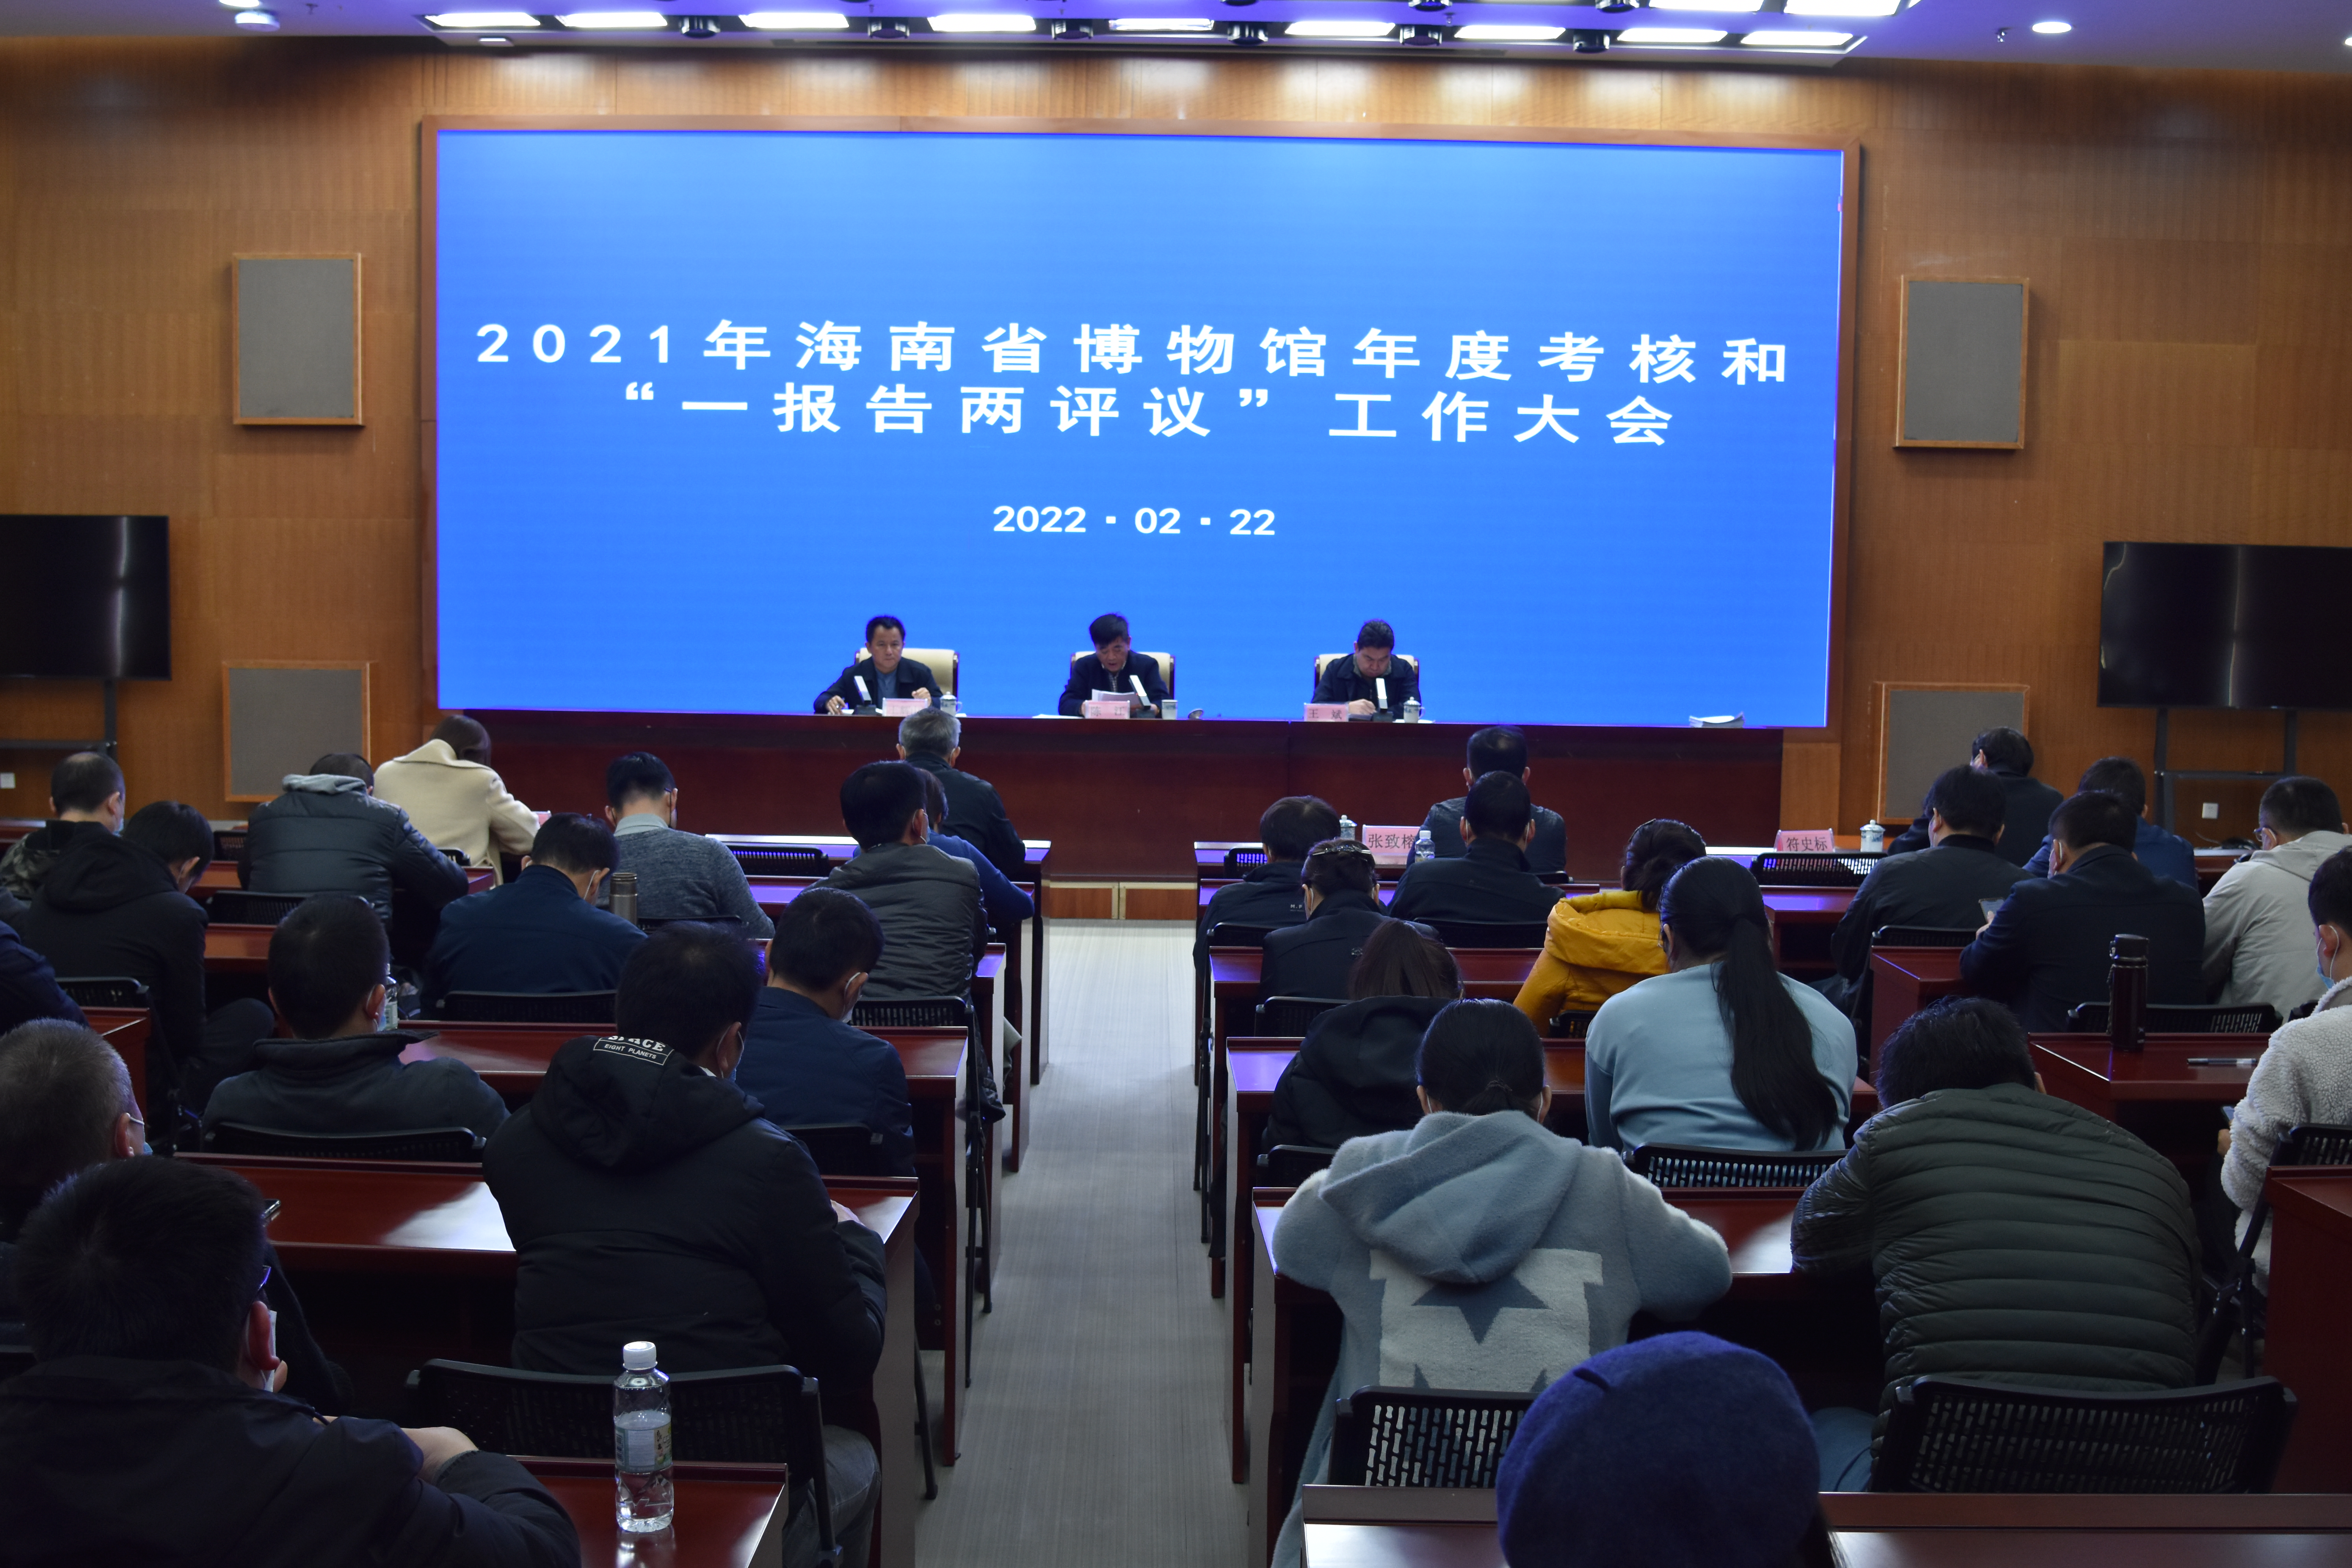 海南省博物馆举行2021年度考核和“一报告两评议”工作大会